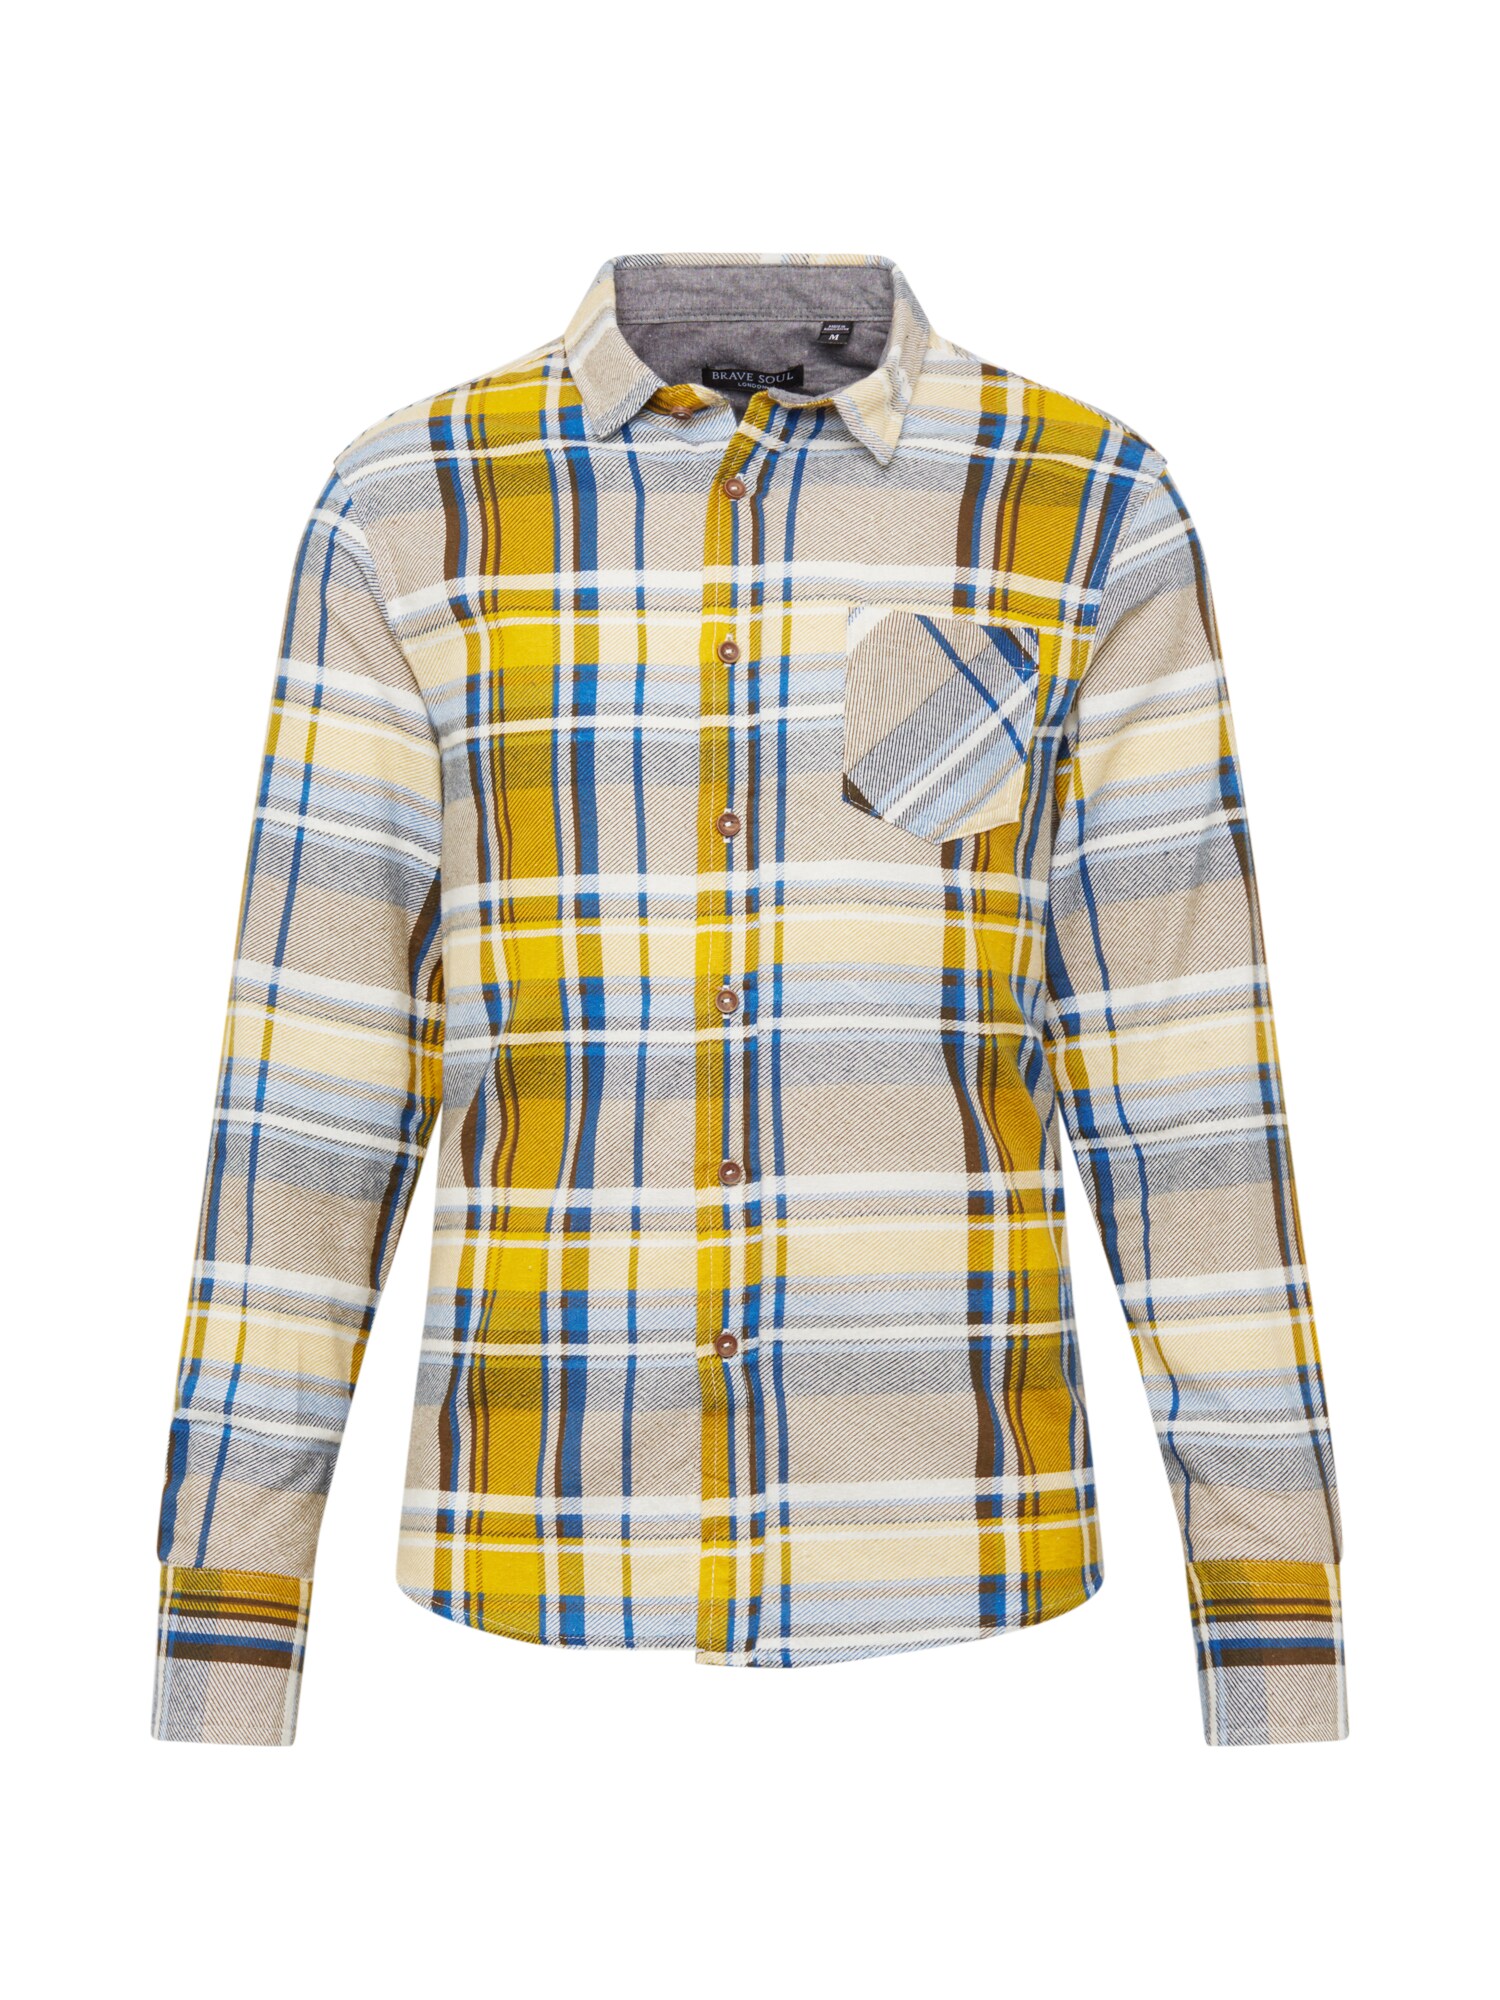 BRAVE SOUL Dalykiniai marškiniai 'Rooker'  mėlyna / raudona / nebalintos drobės spalva / geltona